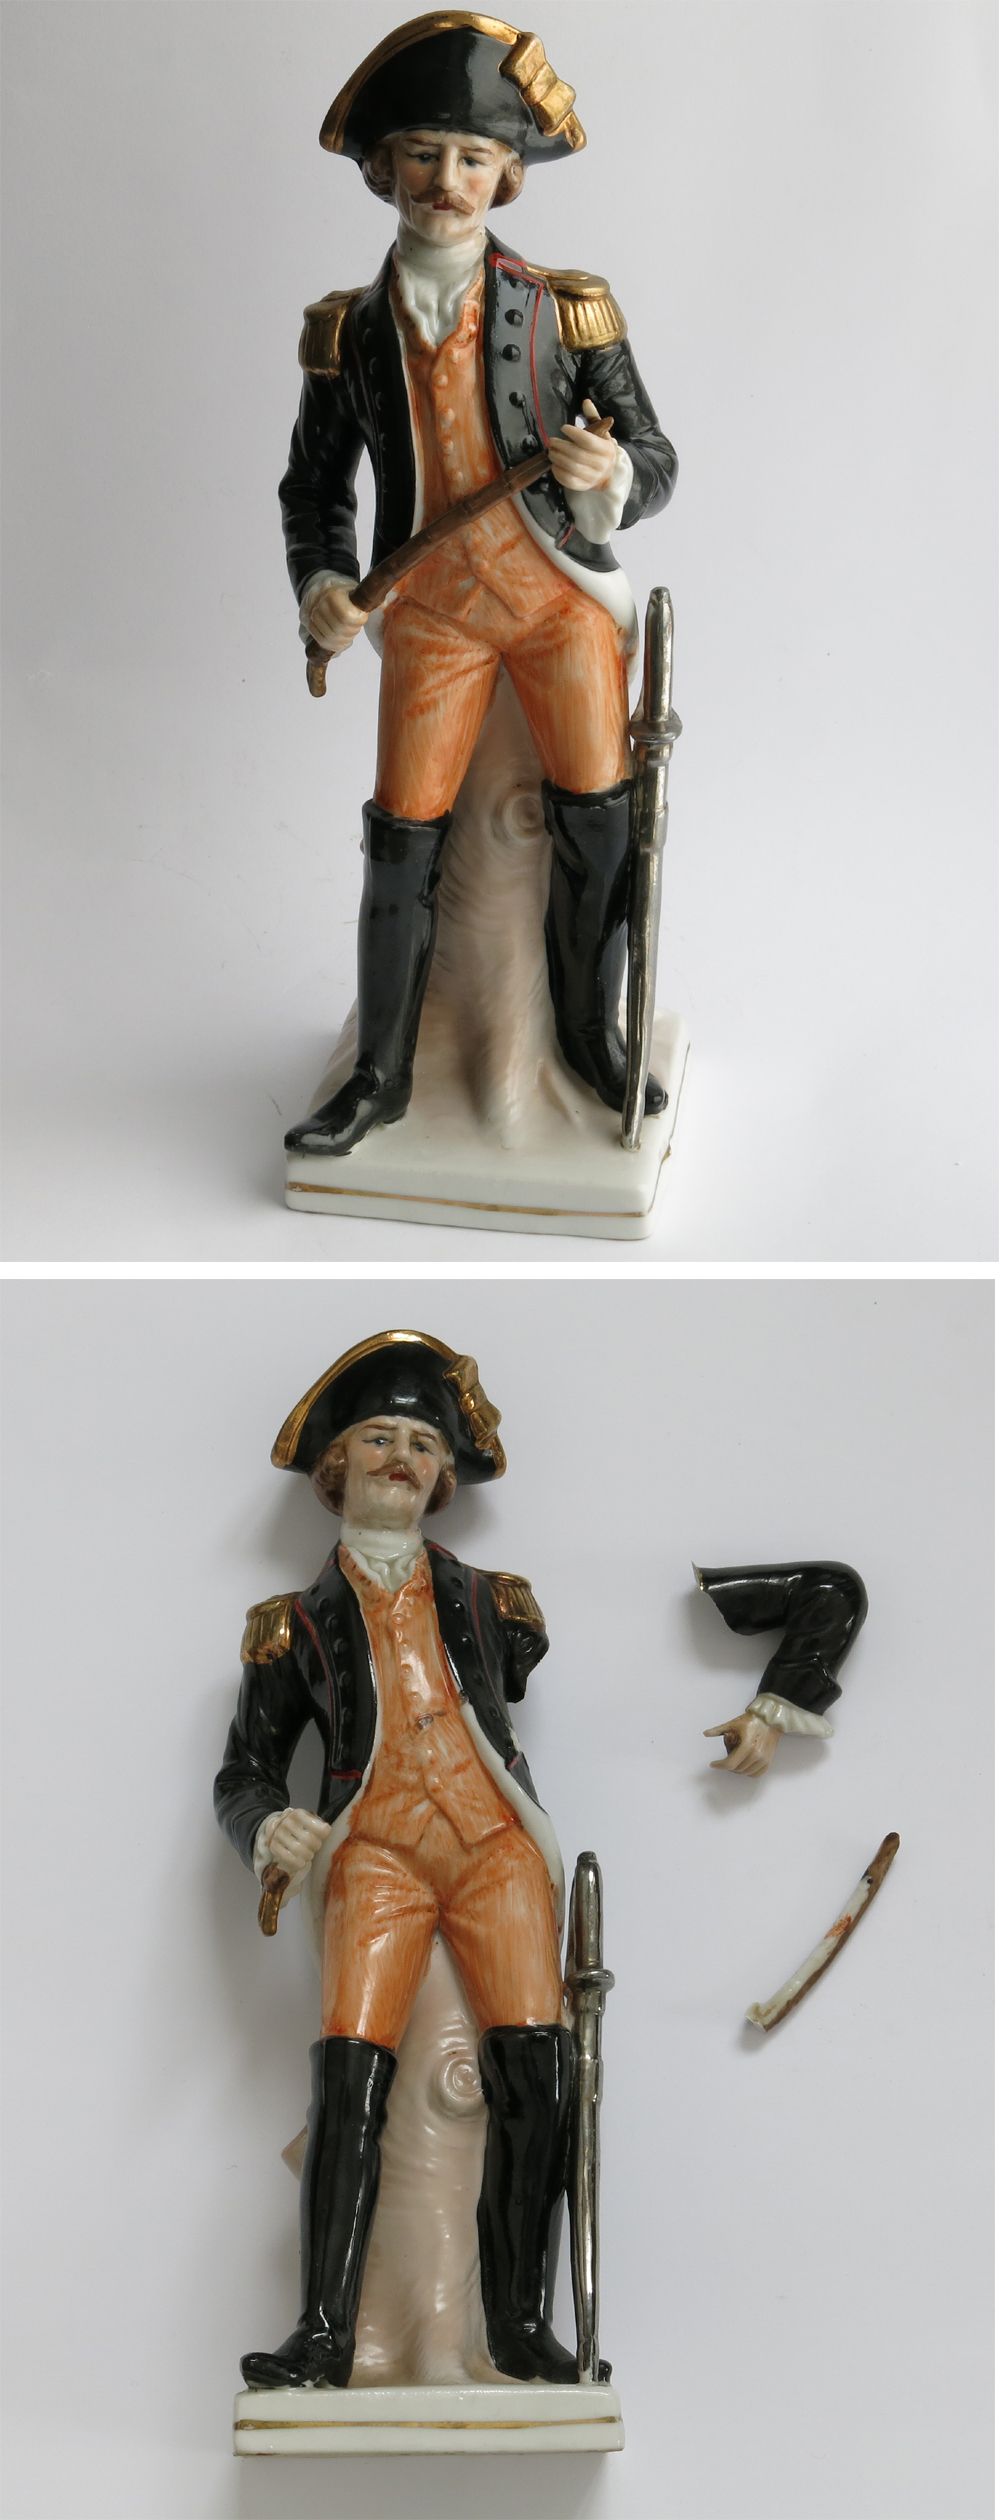 restoration of ceramic figurines